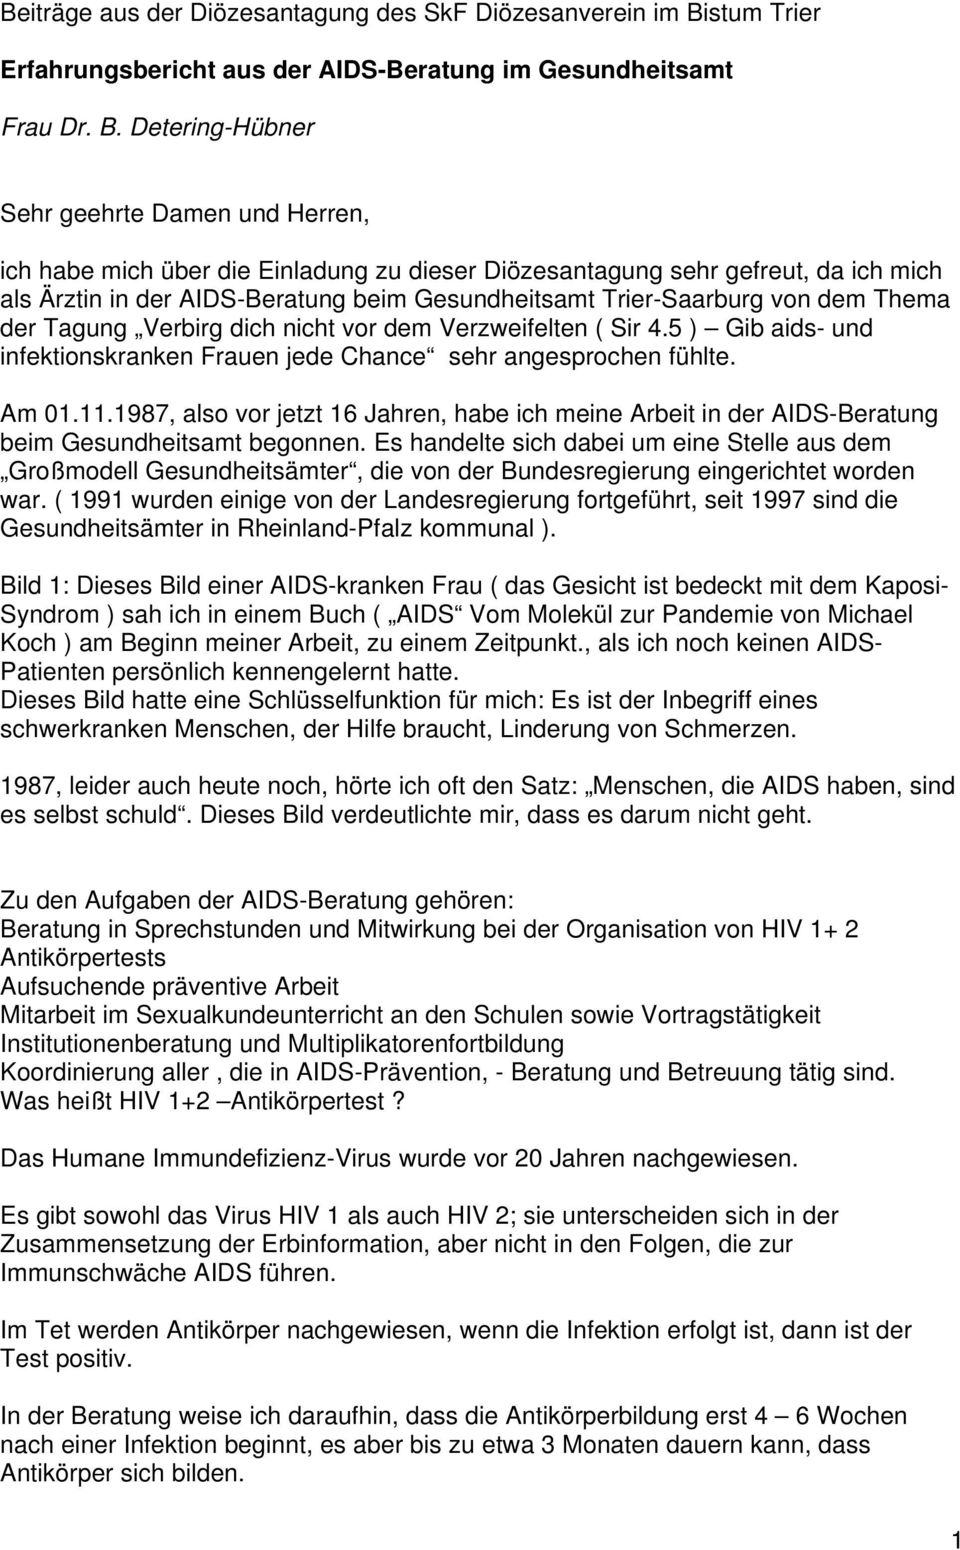 Detering-Hübner Sehr geehrte Damen und Herren, ich habe mich über die Einladung zu dieser Diözesantagung sehr gefreut, da ich mich als Ärztin in der AIDS-Beratung beim Gesundheitsamt Trier-Saarburg